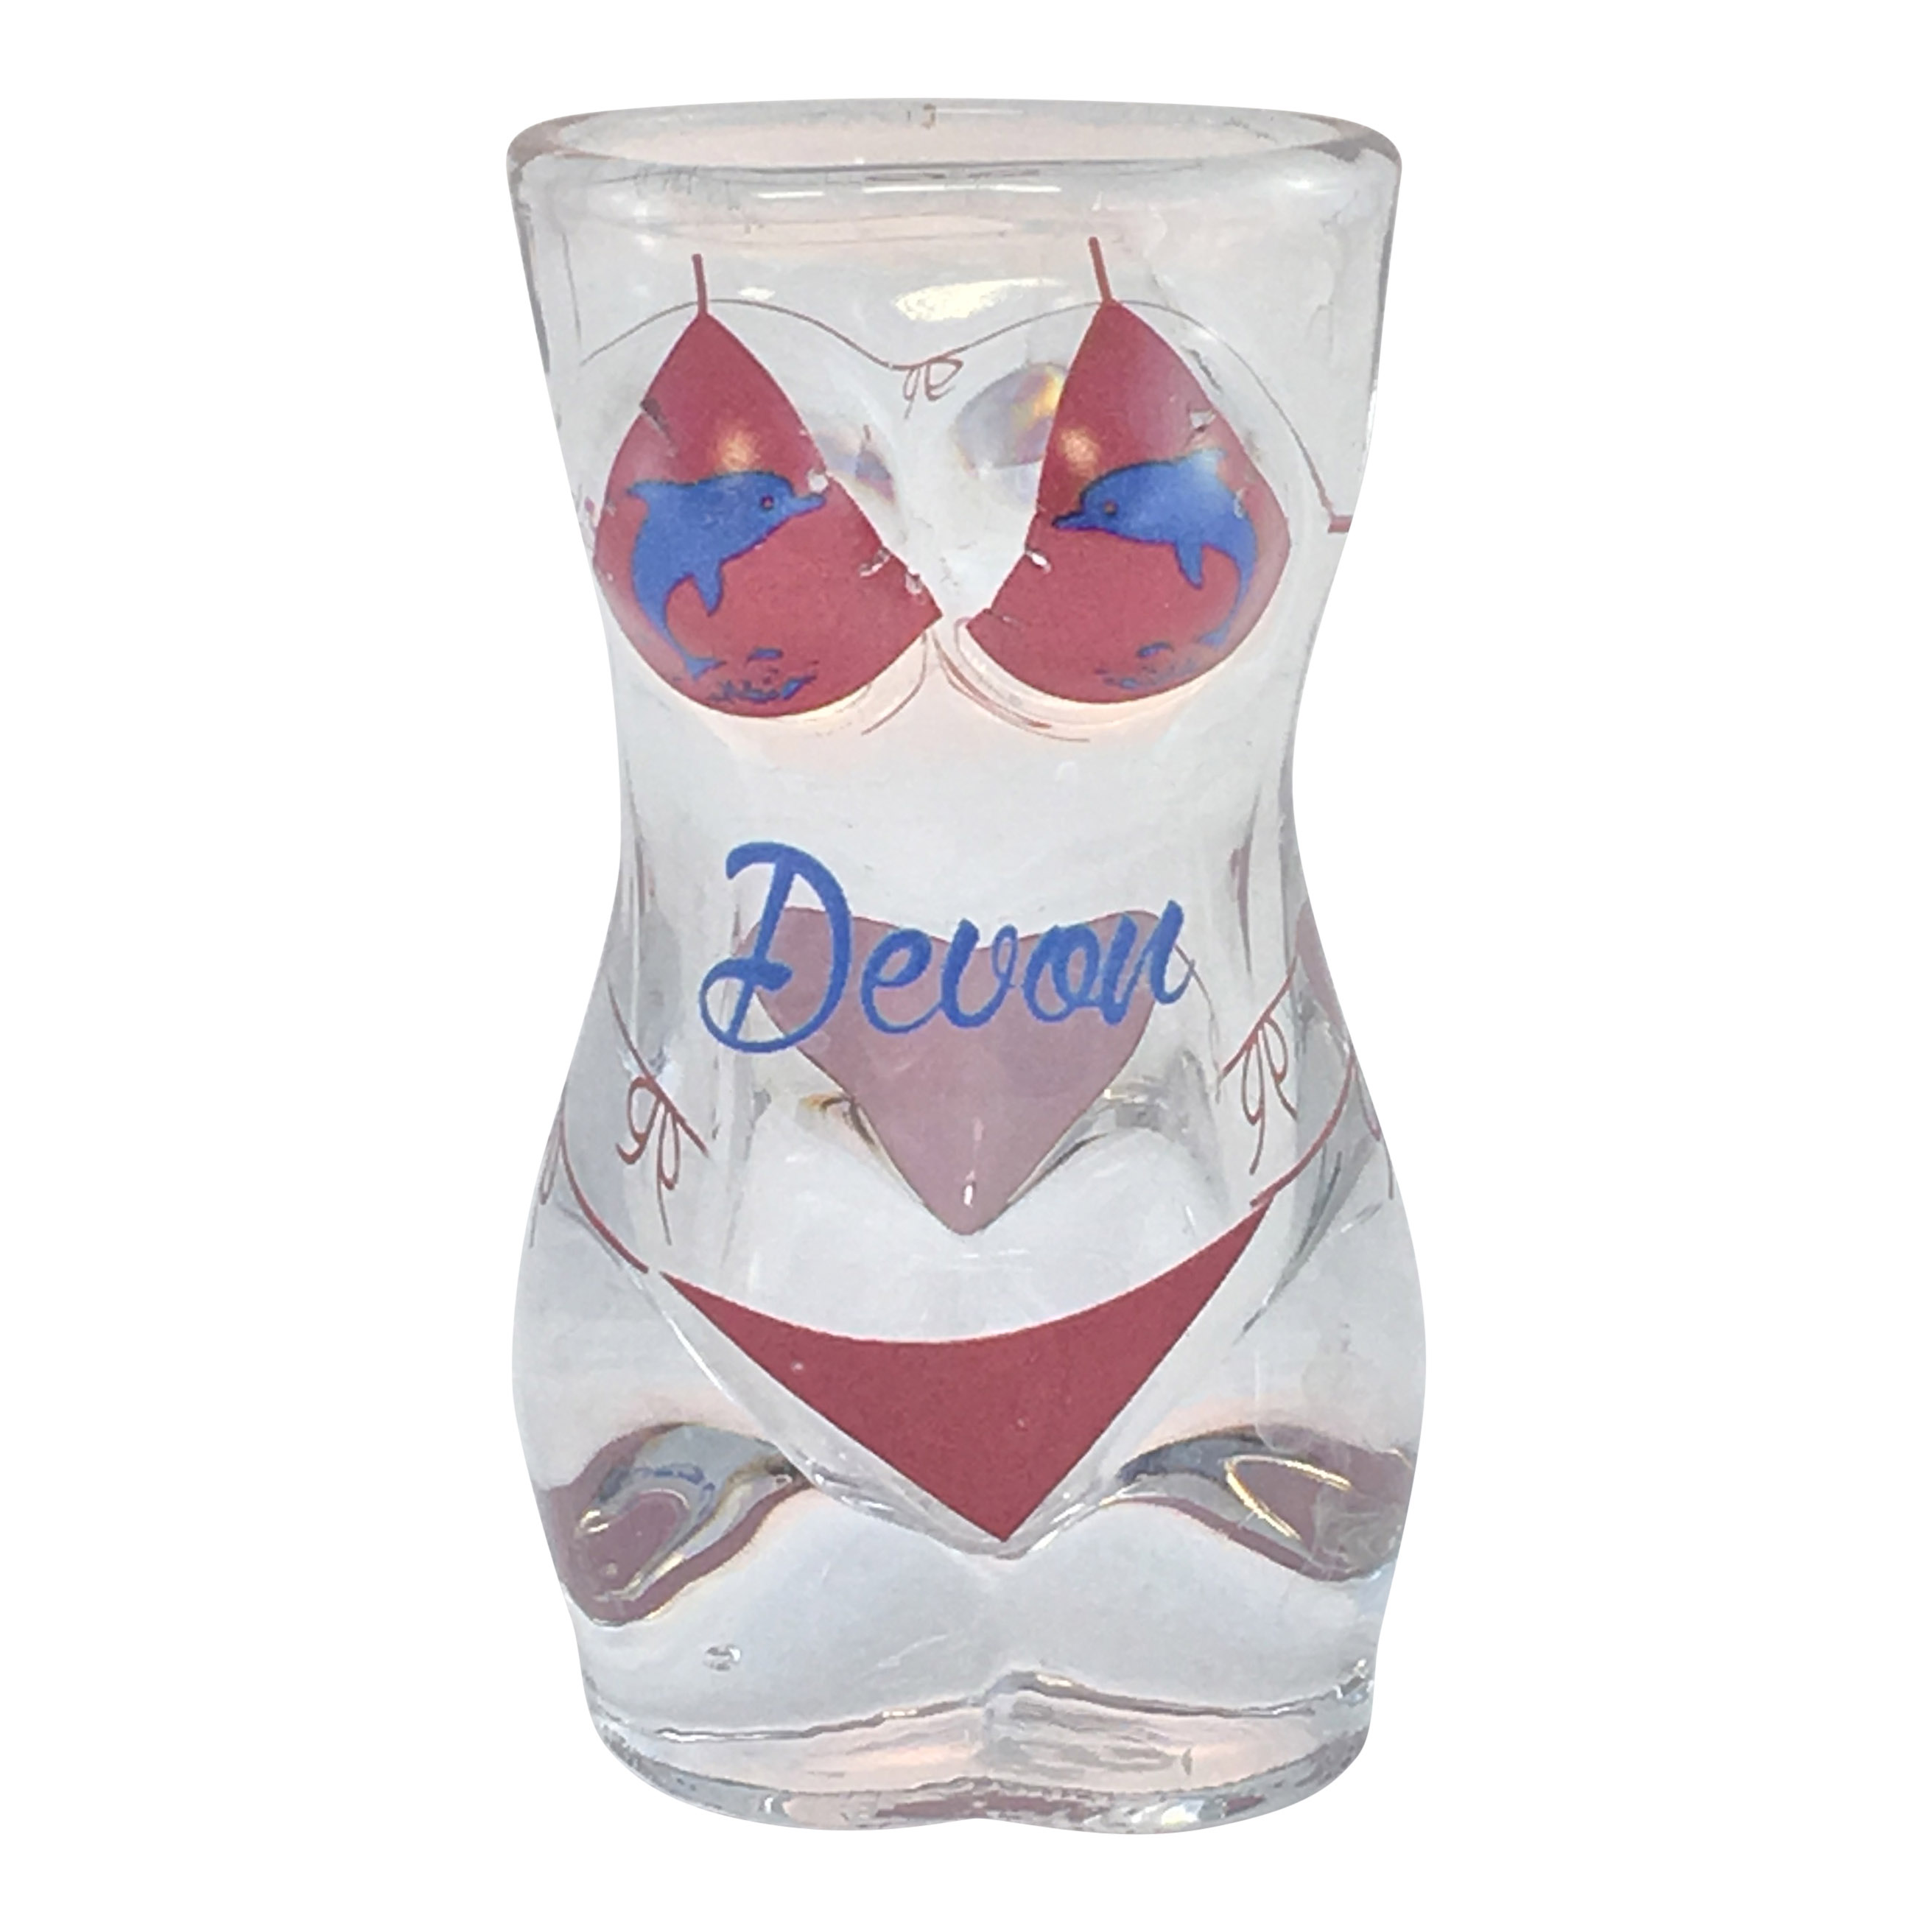 Devon Bikini Shot Glass